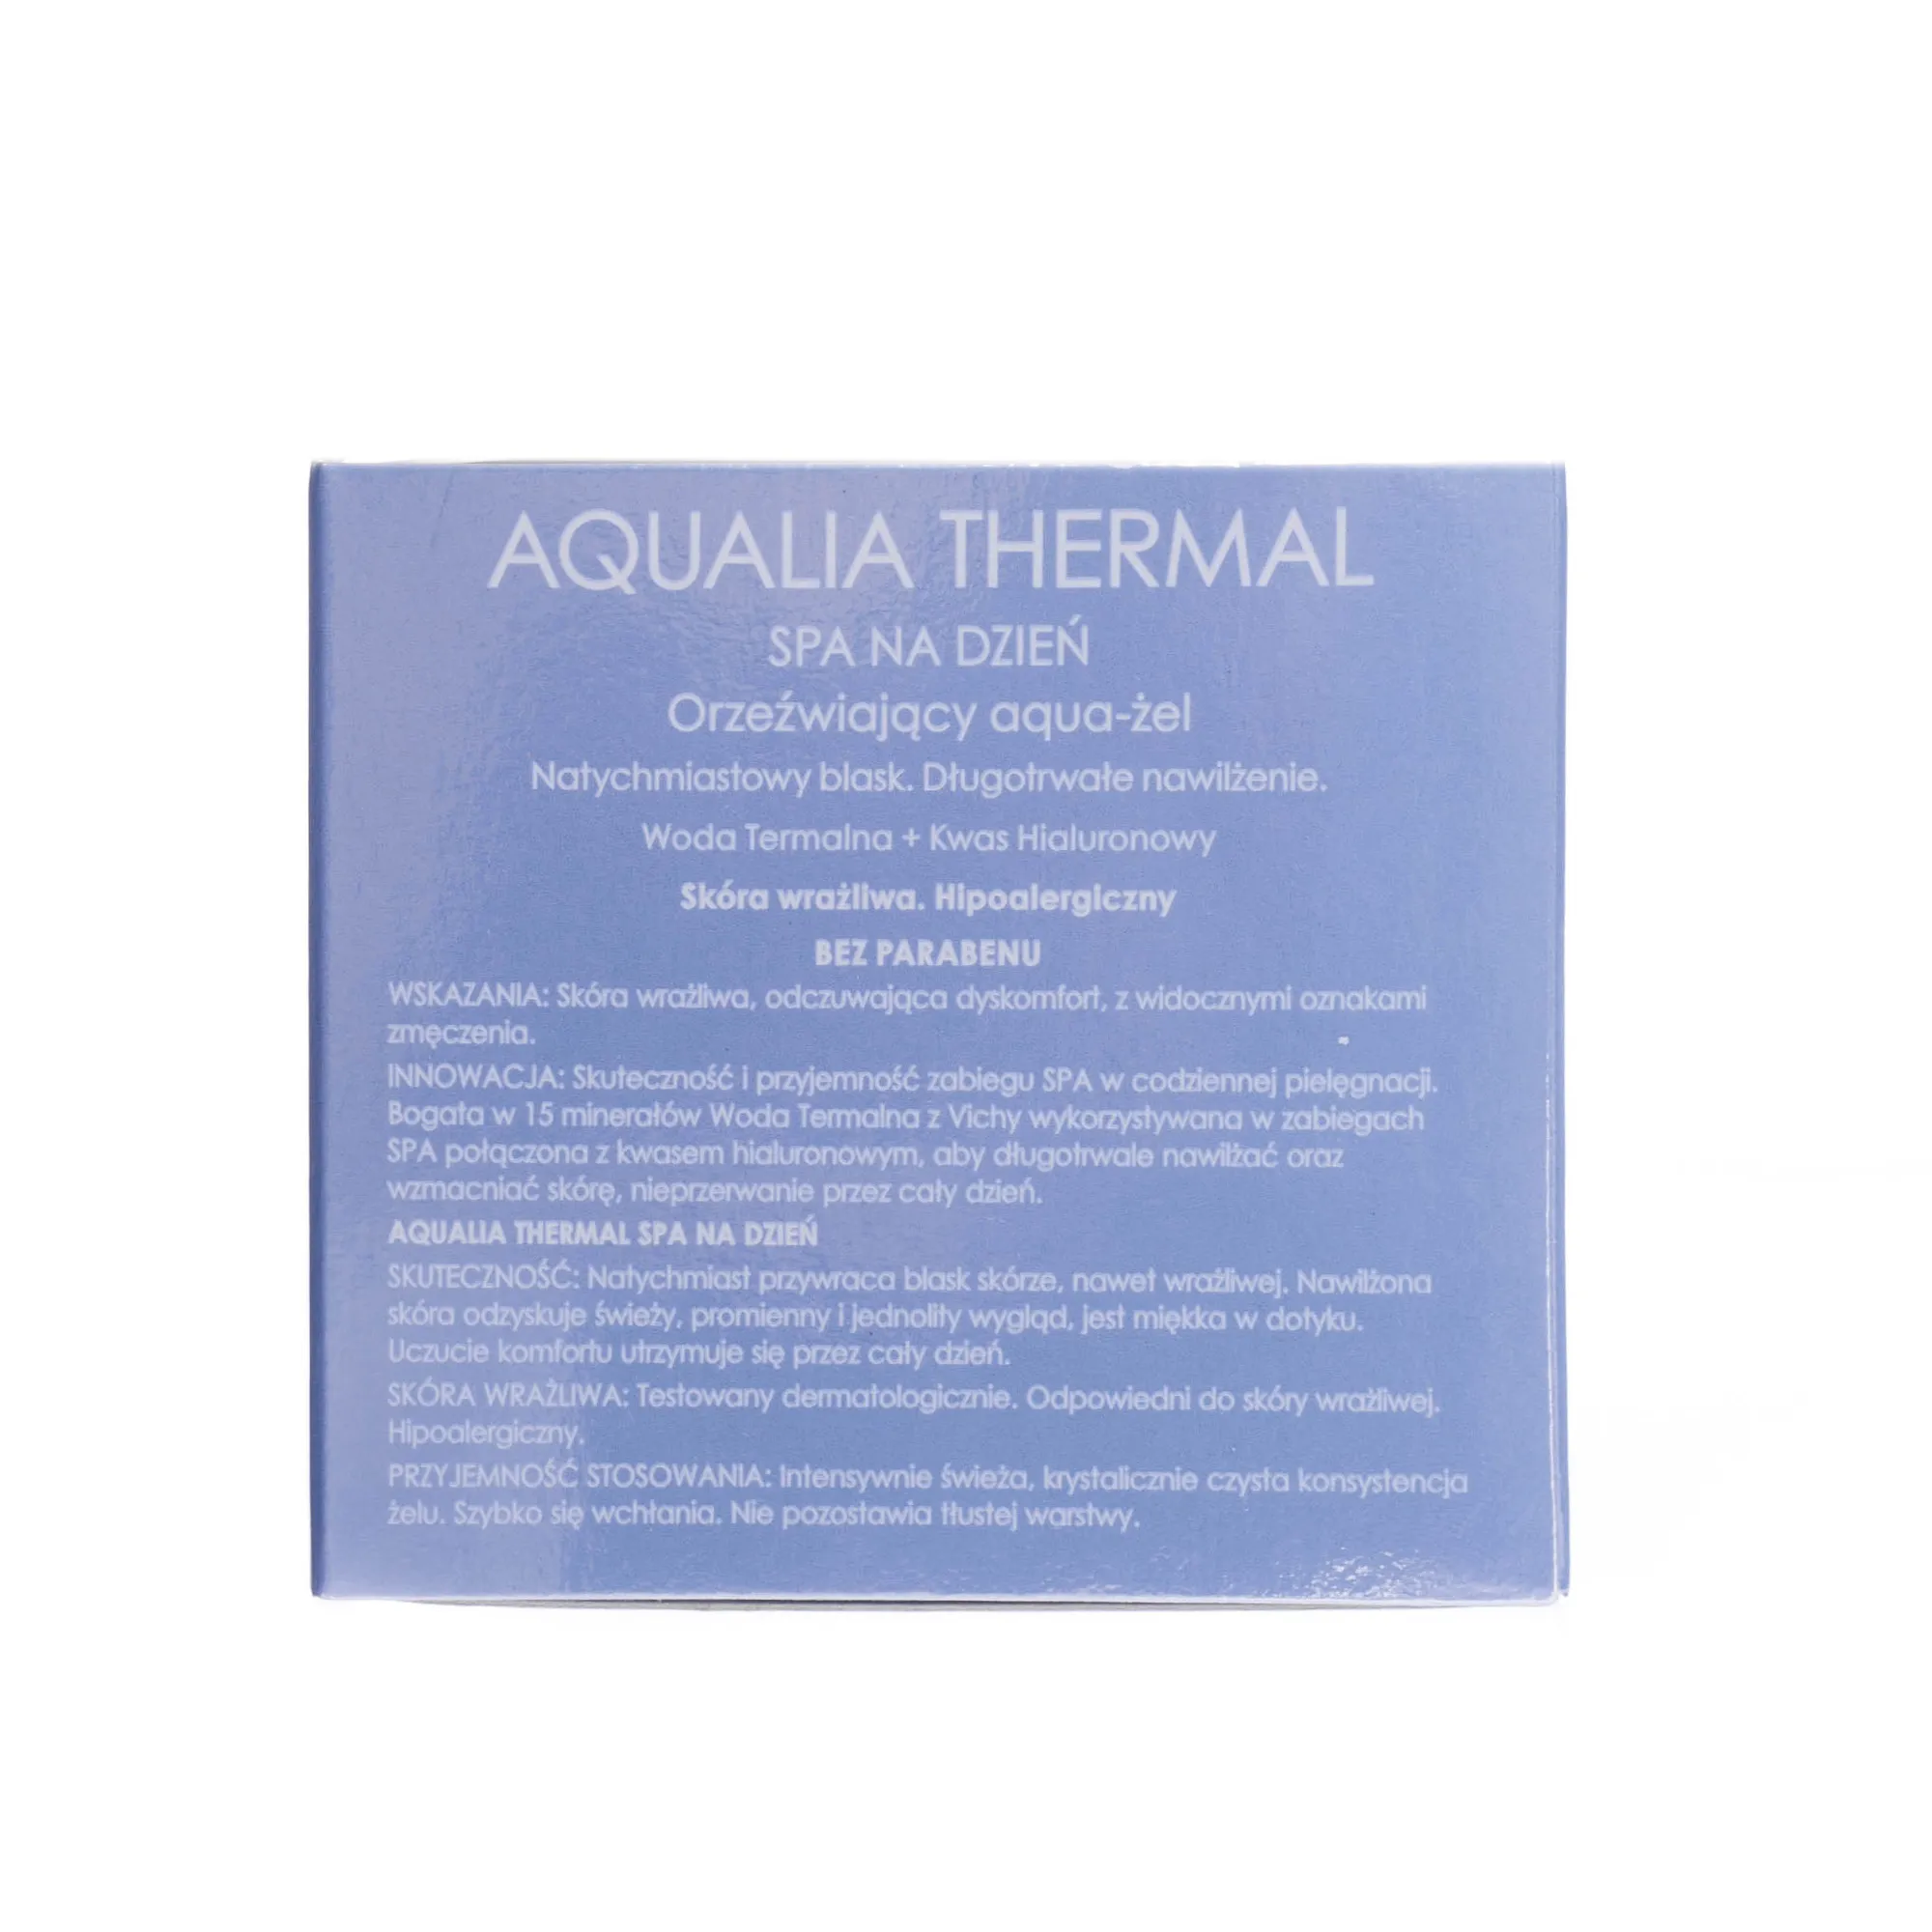 Vichy Aqualia Thermal Spa na dzień orzeźwiający aqua-żel 75 ml 